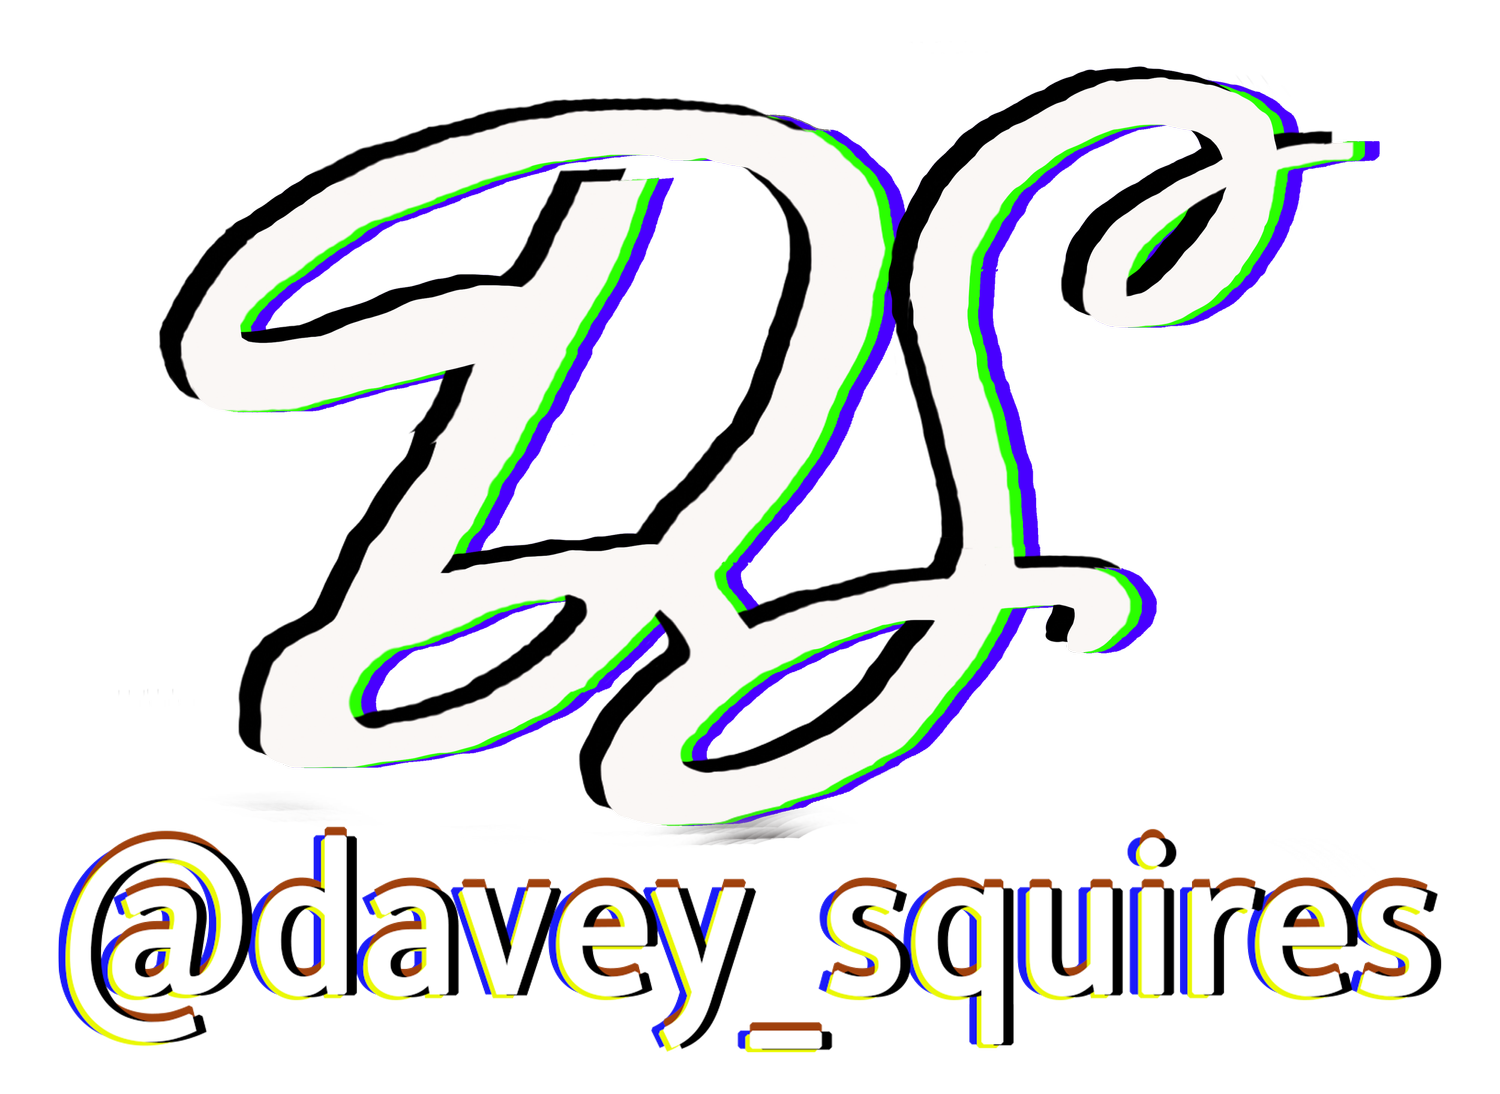 Davey Squires